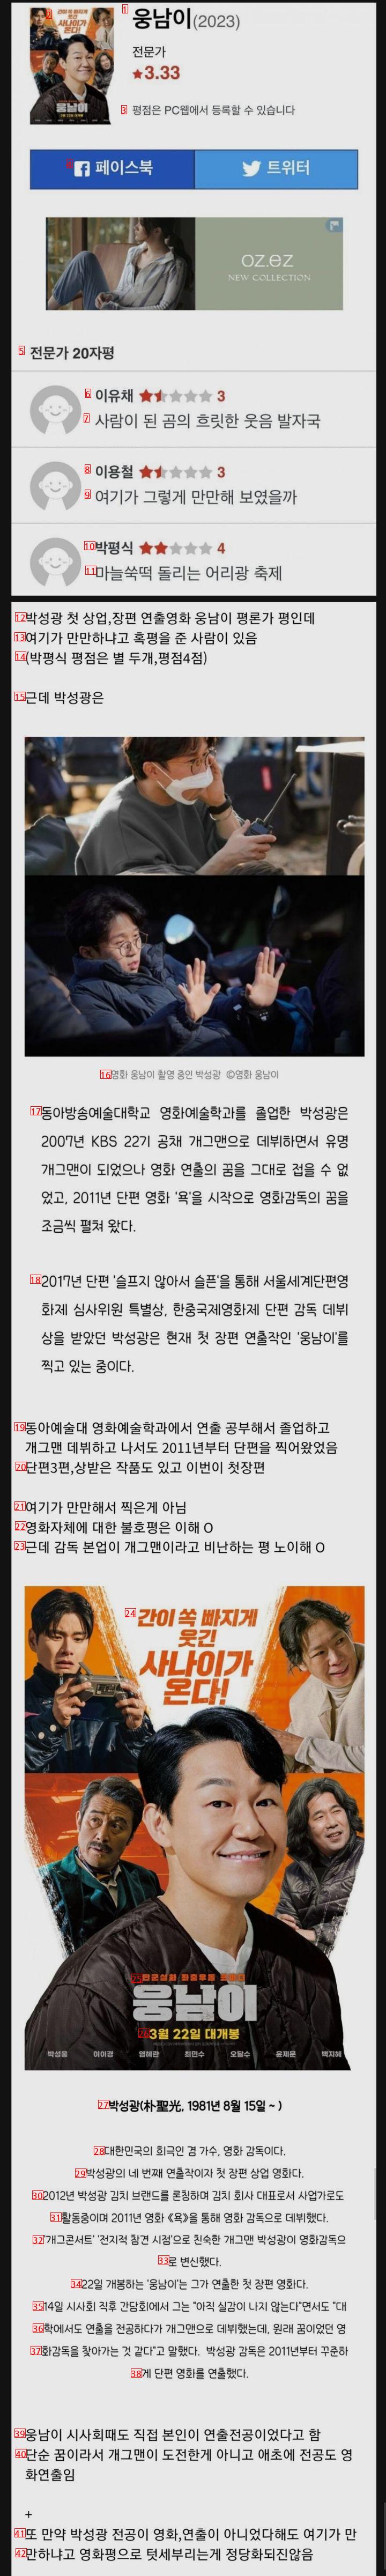 개그맨 박성광 연출한 영화 """"웅남이"""" 평론가 논란